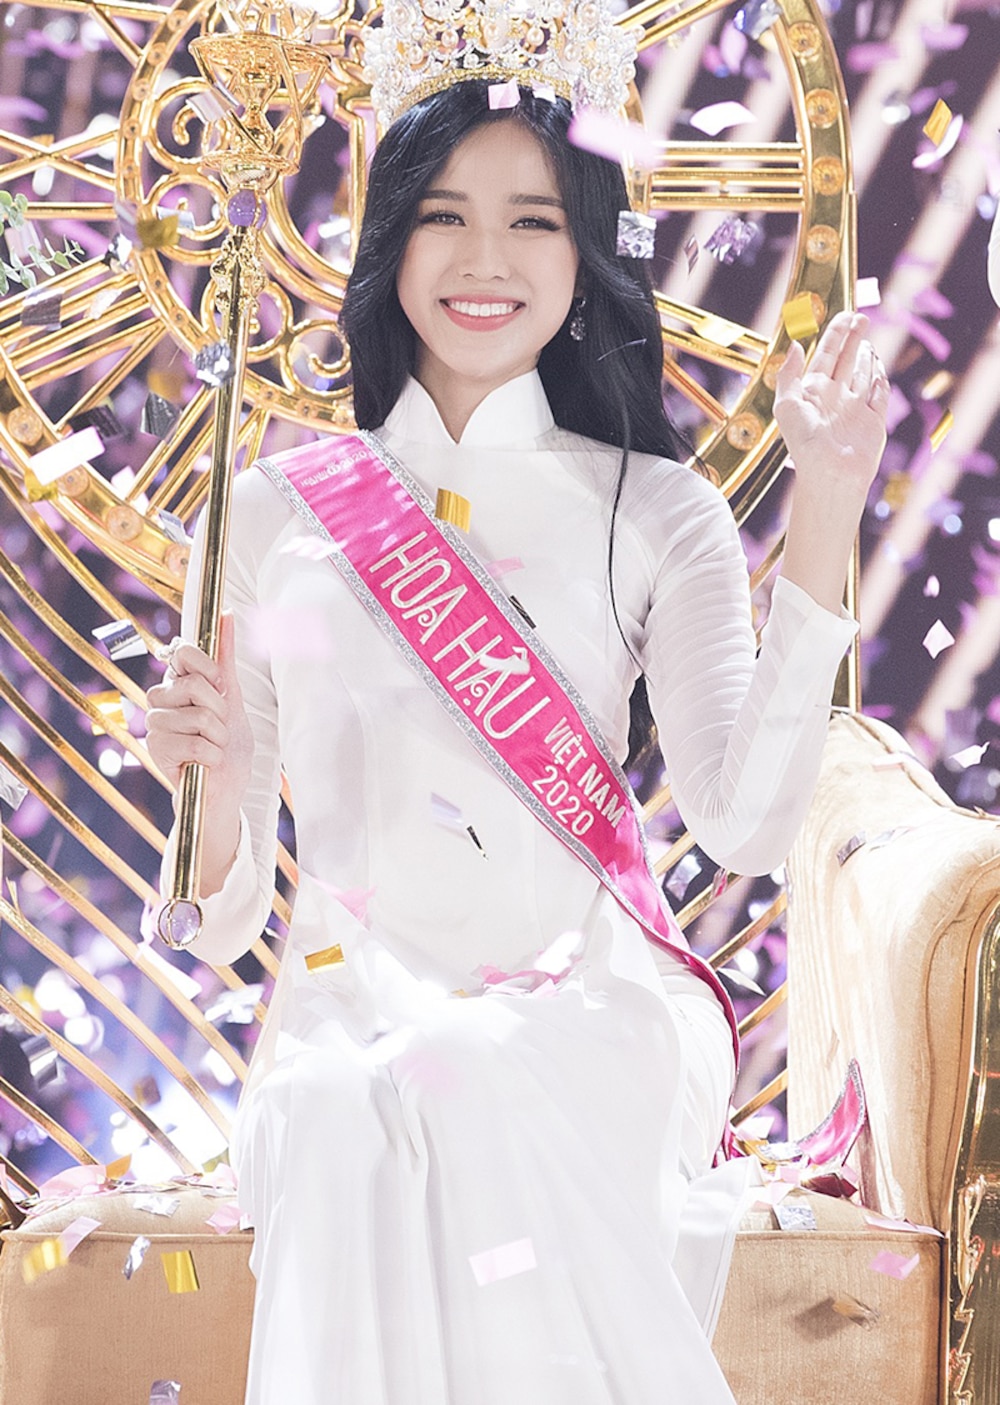 Với sắc vóc xinh đẹp cùng thần thái cuốn hút, Đỗ Thị Hà chắc chắn sẽ là gương mặt đại diện cho nhan sắc Việt tại cuộc thi Hoa hậu Thế giới 2021 với nhiều triển vọng.